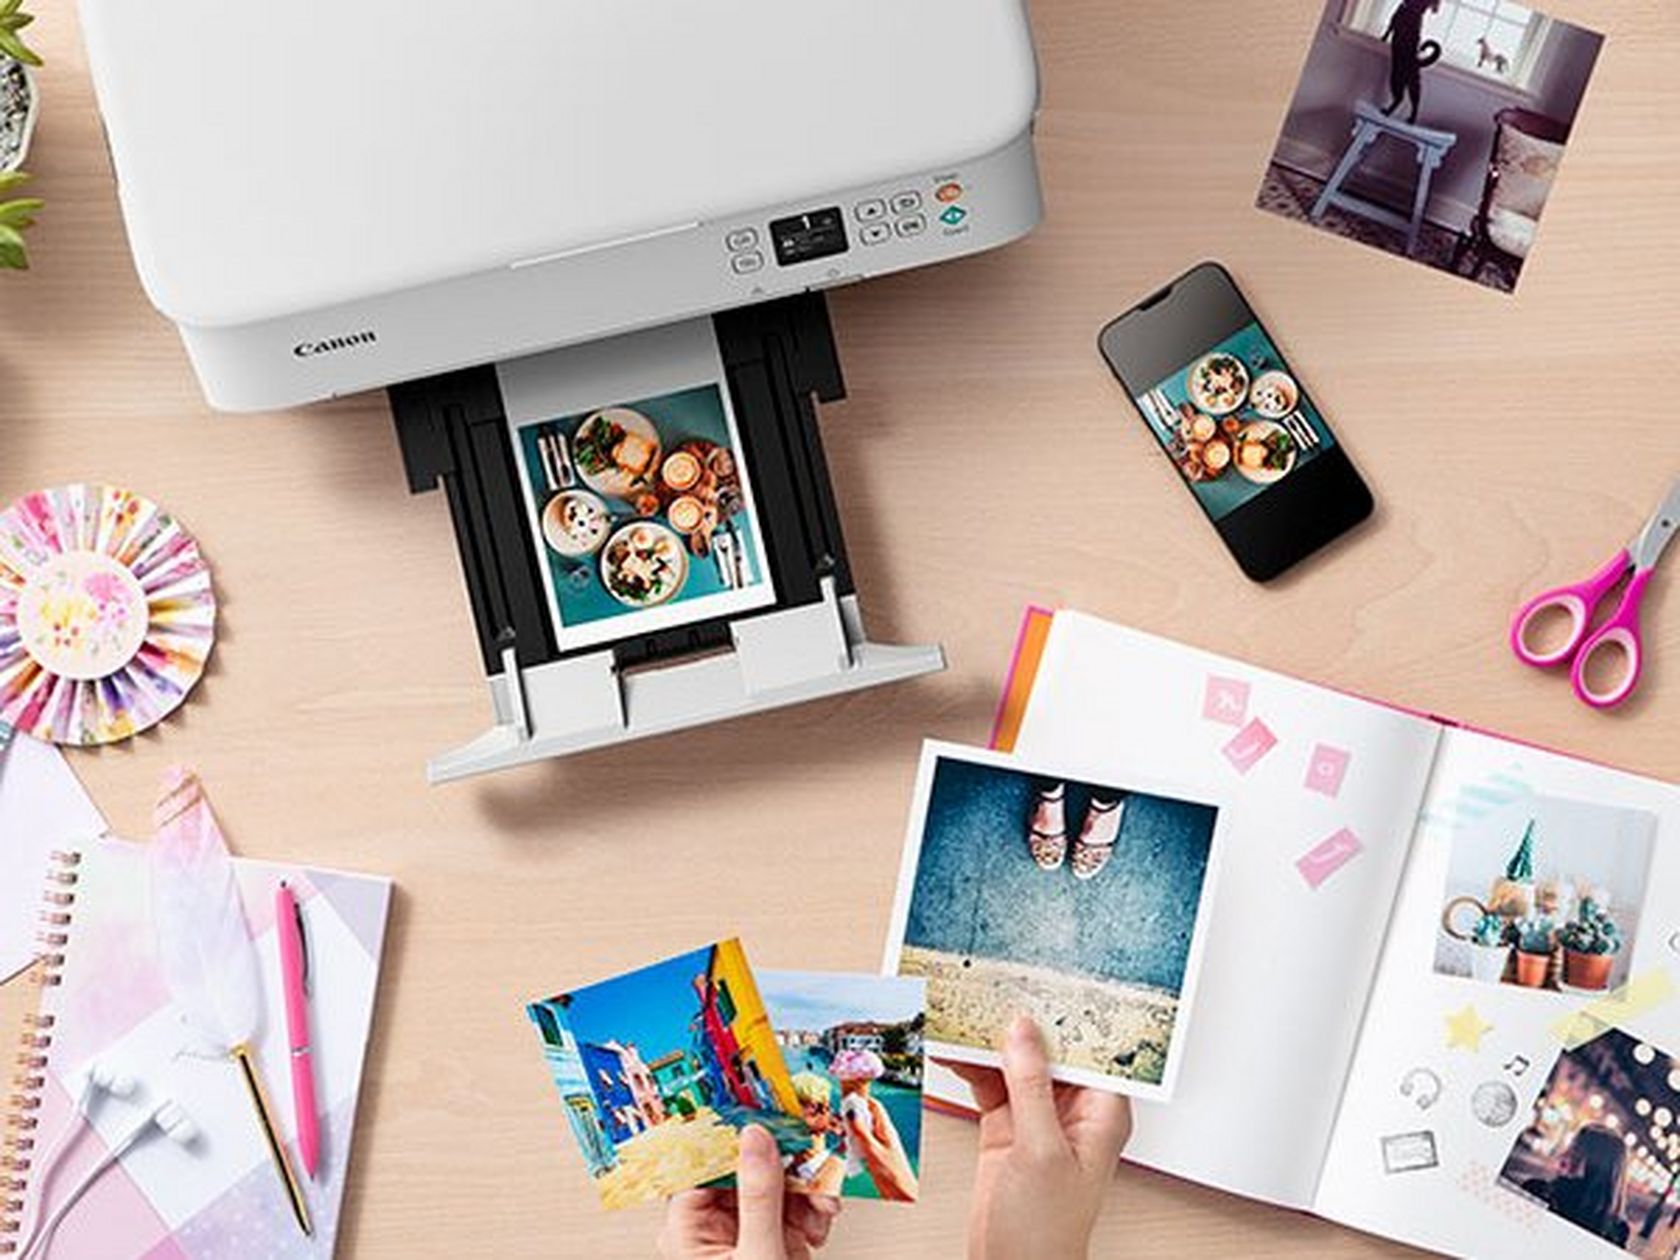 Compra Impresora de inyección de tinta multifunción PIXMA TS5352 de Canon,  rosa — Tienda Canon Espana